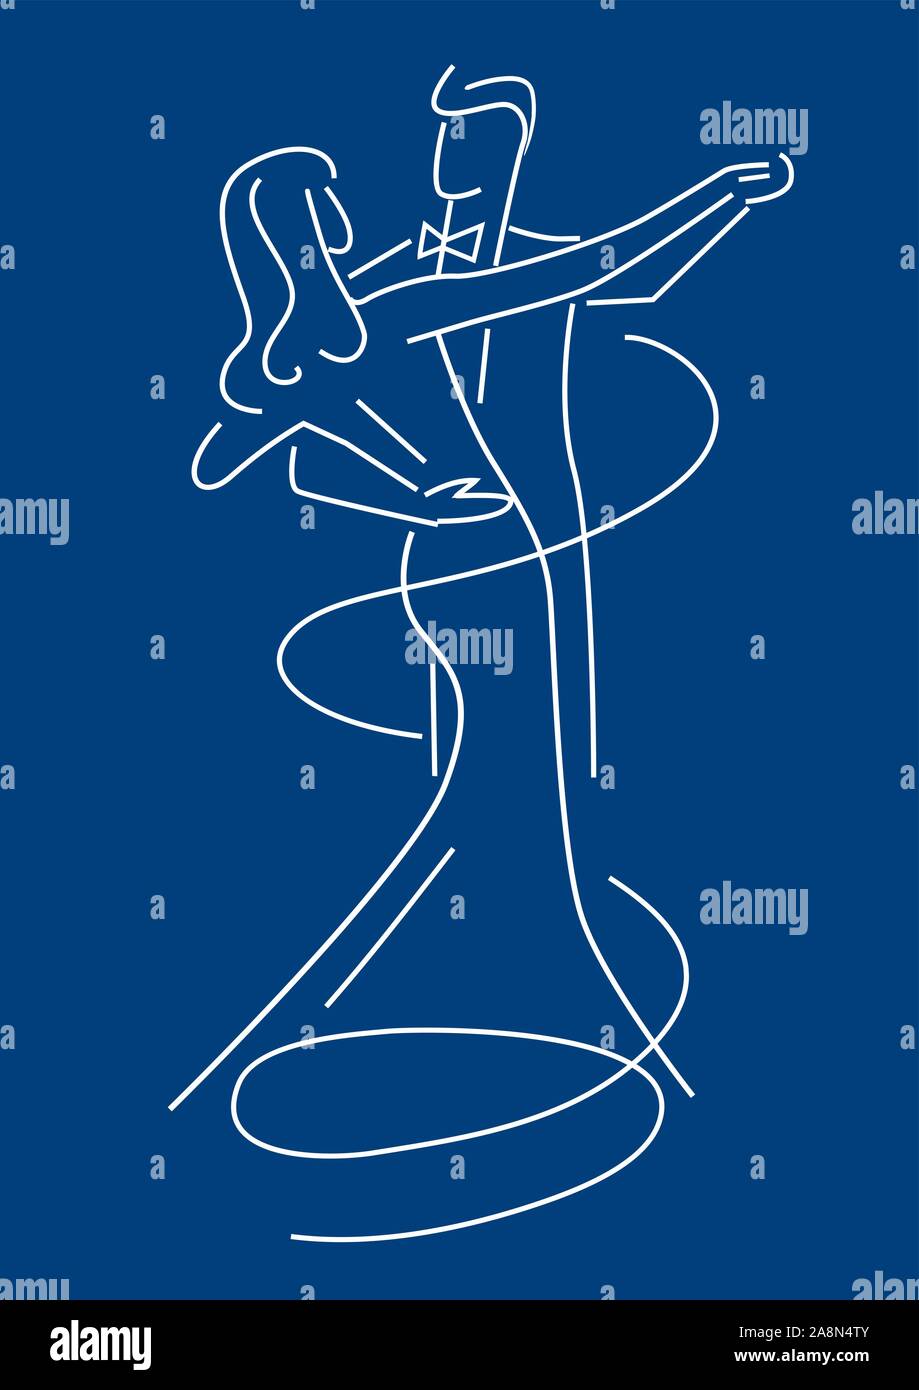 Couple de danseurs Balroom.Line art illustration stylisée de Young couple dancing bal sur fond bleu. Vector disponibles. Illustration de Vecteur